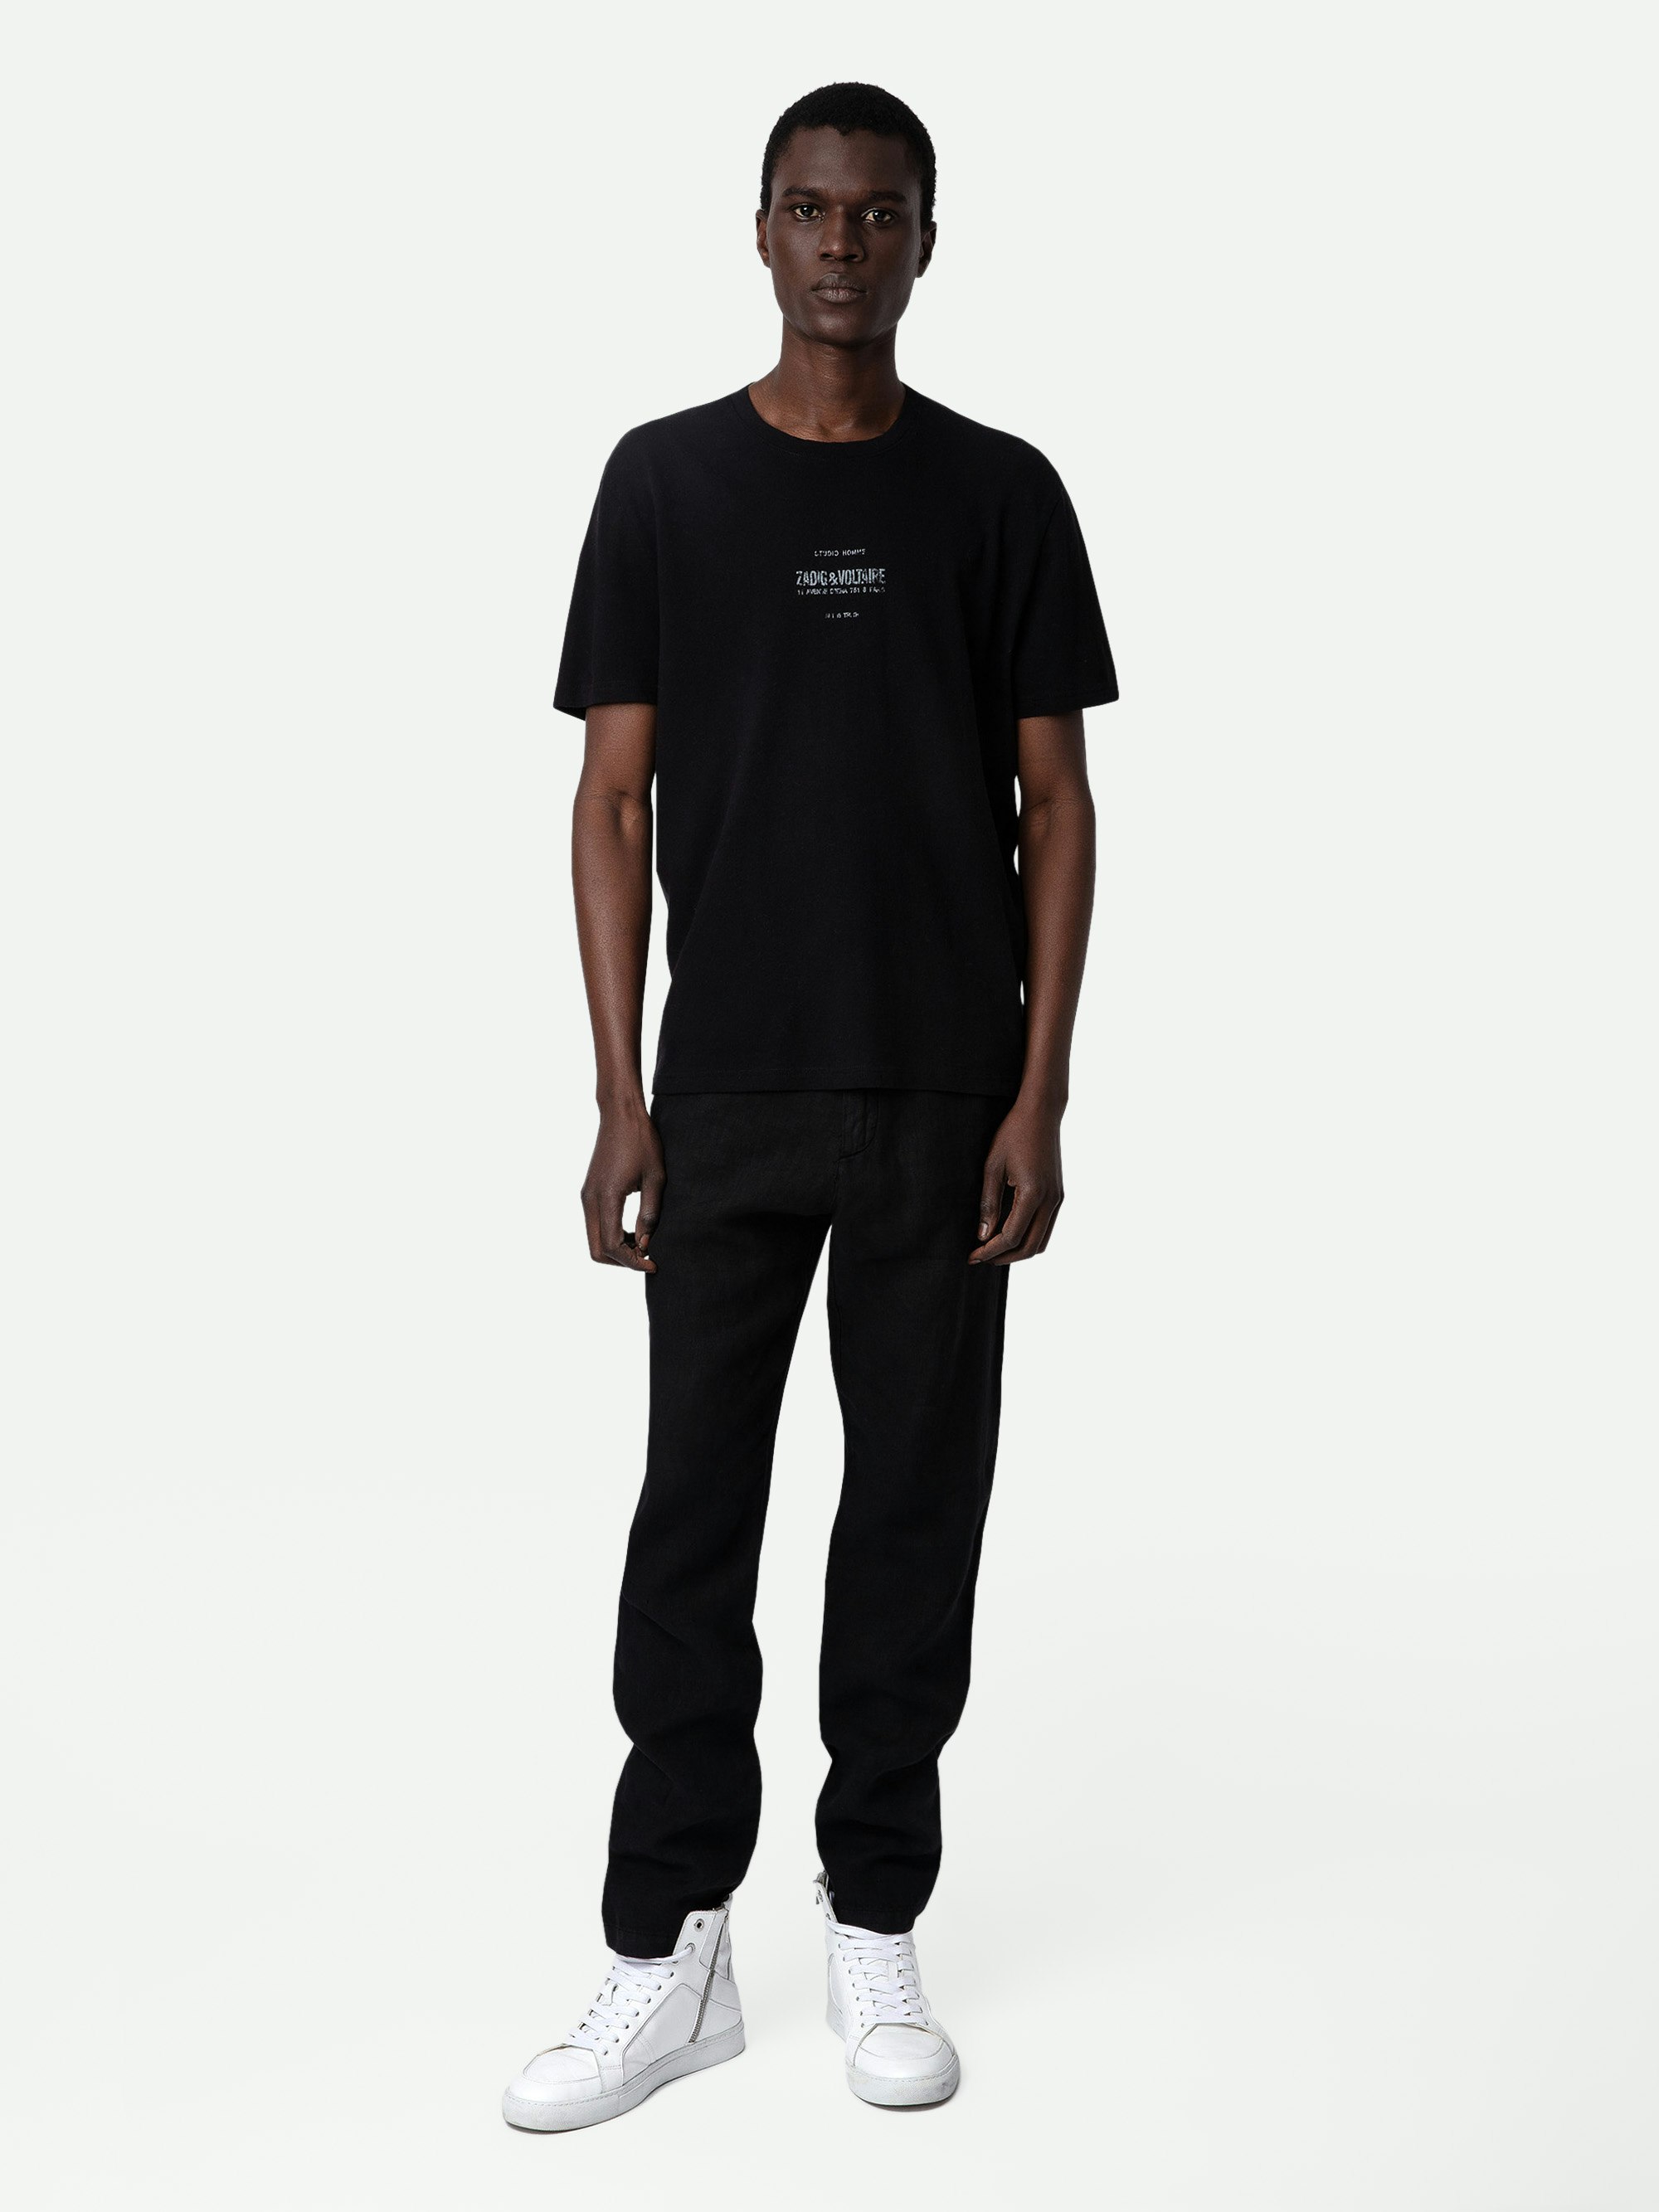 Camiseta Jetty - Camiseta negra de lino lavado con mangas cortas y escudo Studio Homme estampado.